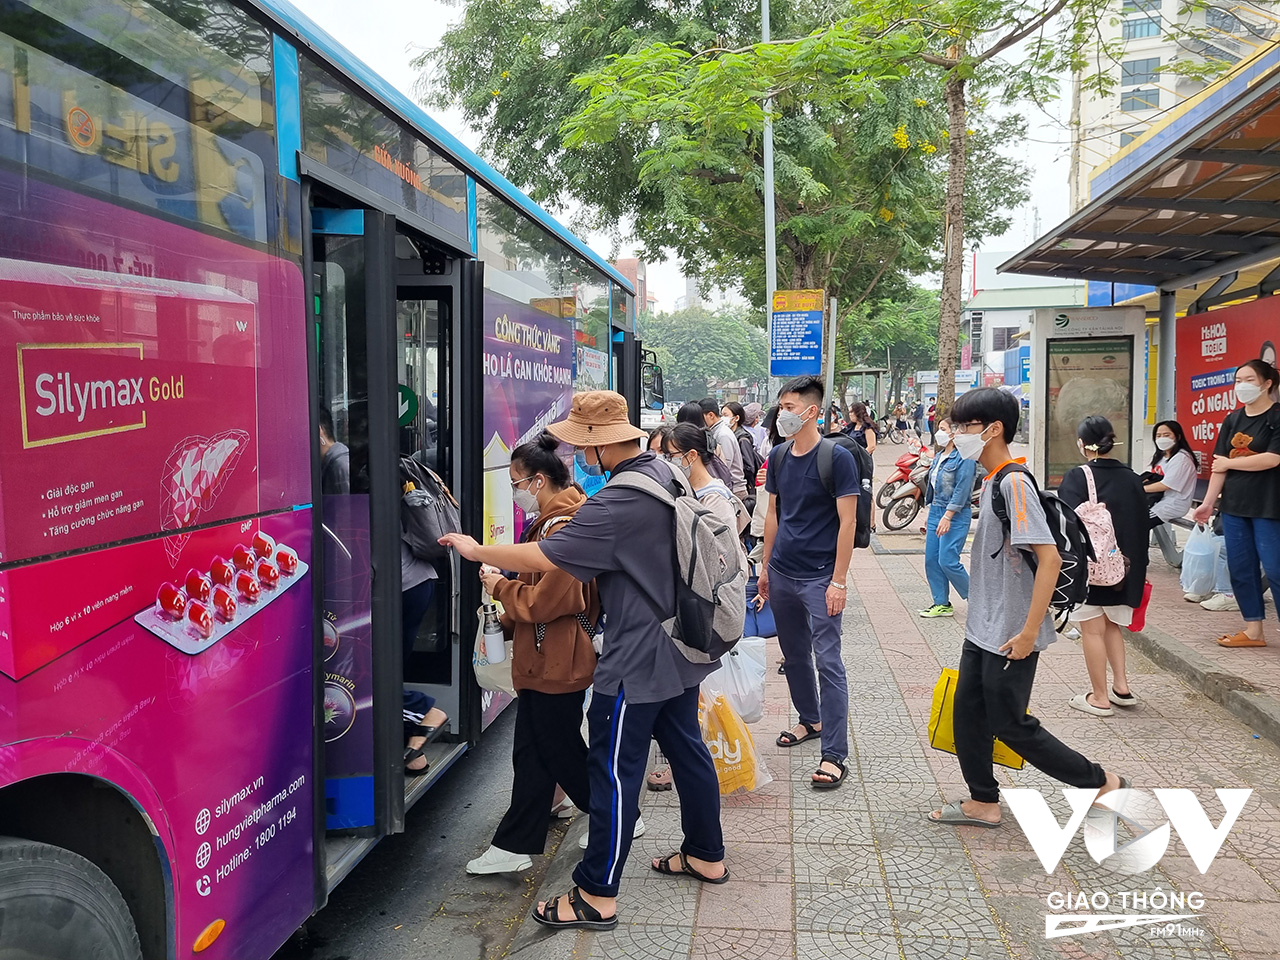 Theo Trung tâm Quản lý giao thông công cộng Hà Nội, lượng hành khách đi xe buýt trong tháng 10 là gần 24,5 triệu lượt, tăng gần 4 triệu lượt so với tháng 9, tương đương 18%